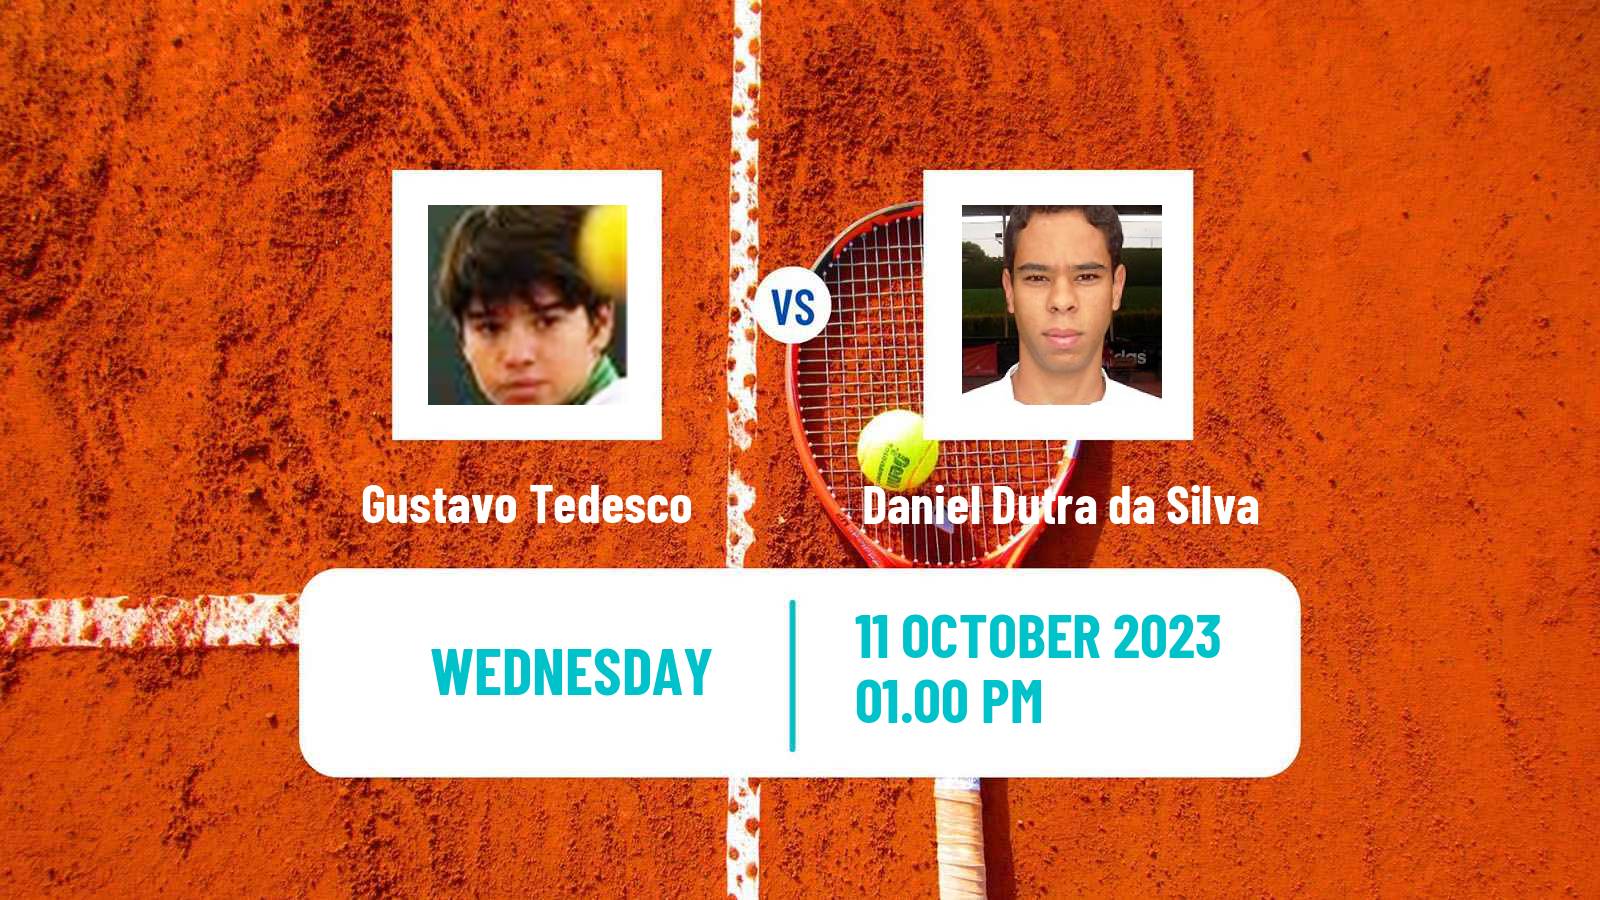 Tennis ITF M25 Lajeado Men Gustavo Tedesco - Daniel Dutra da Silva